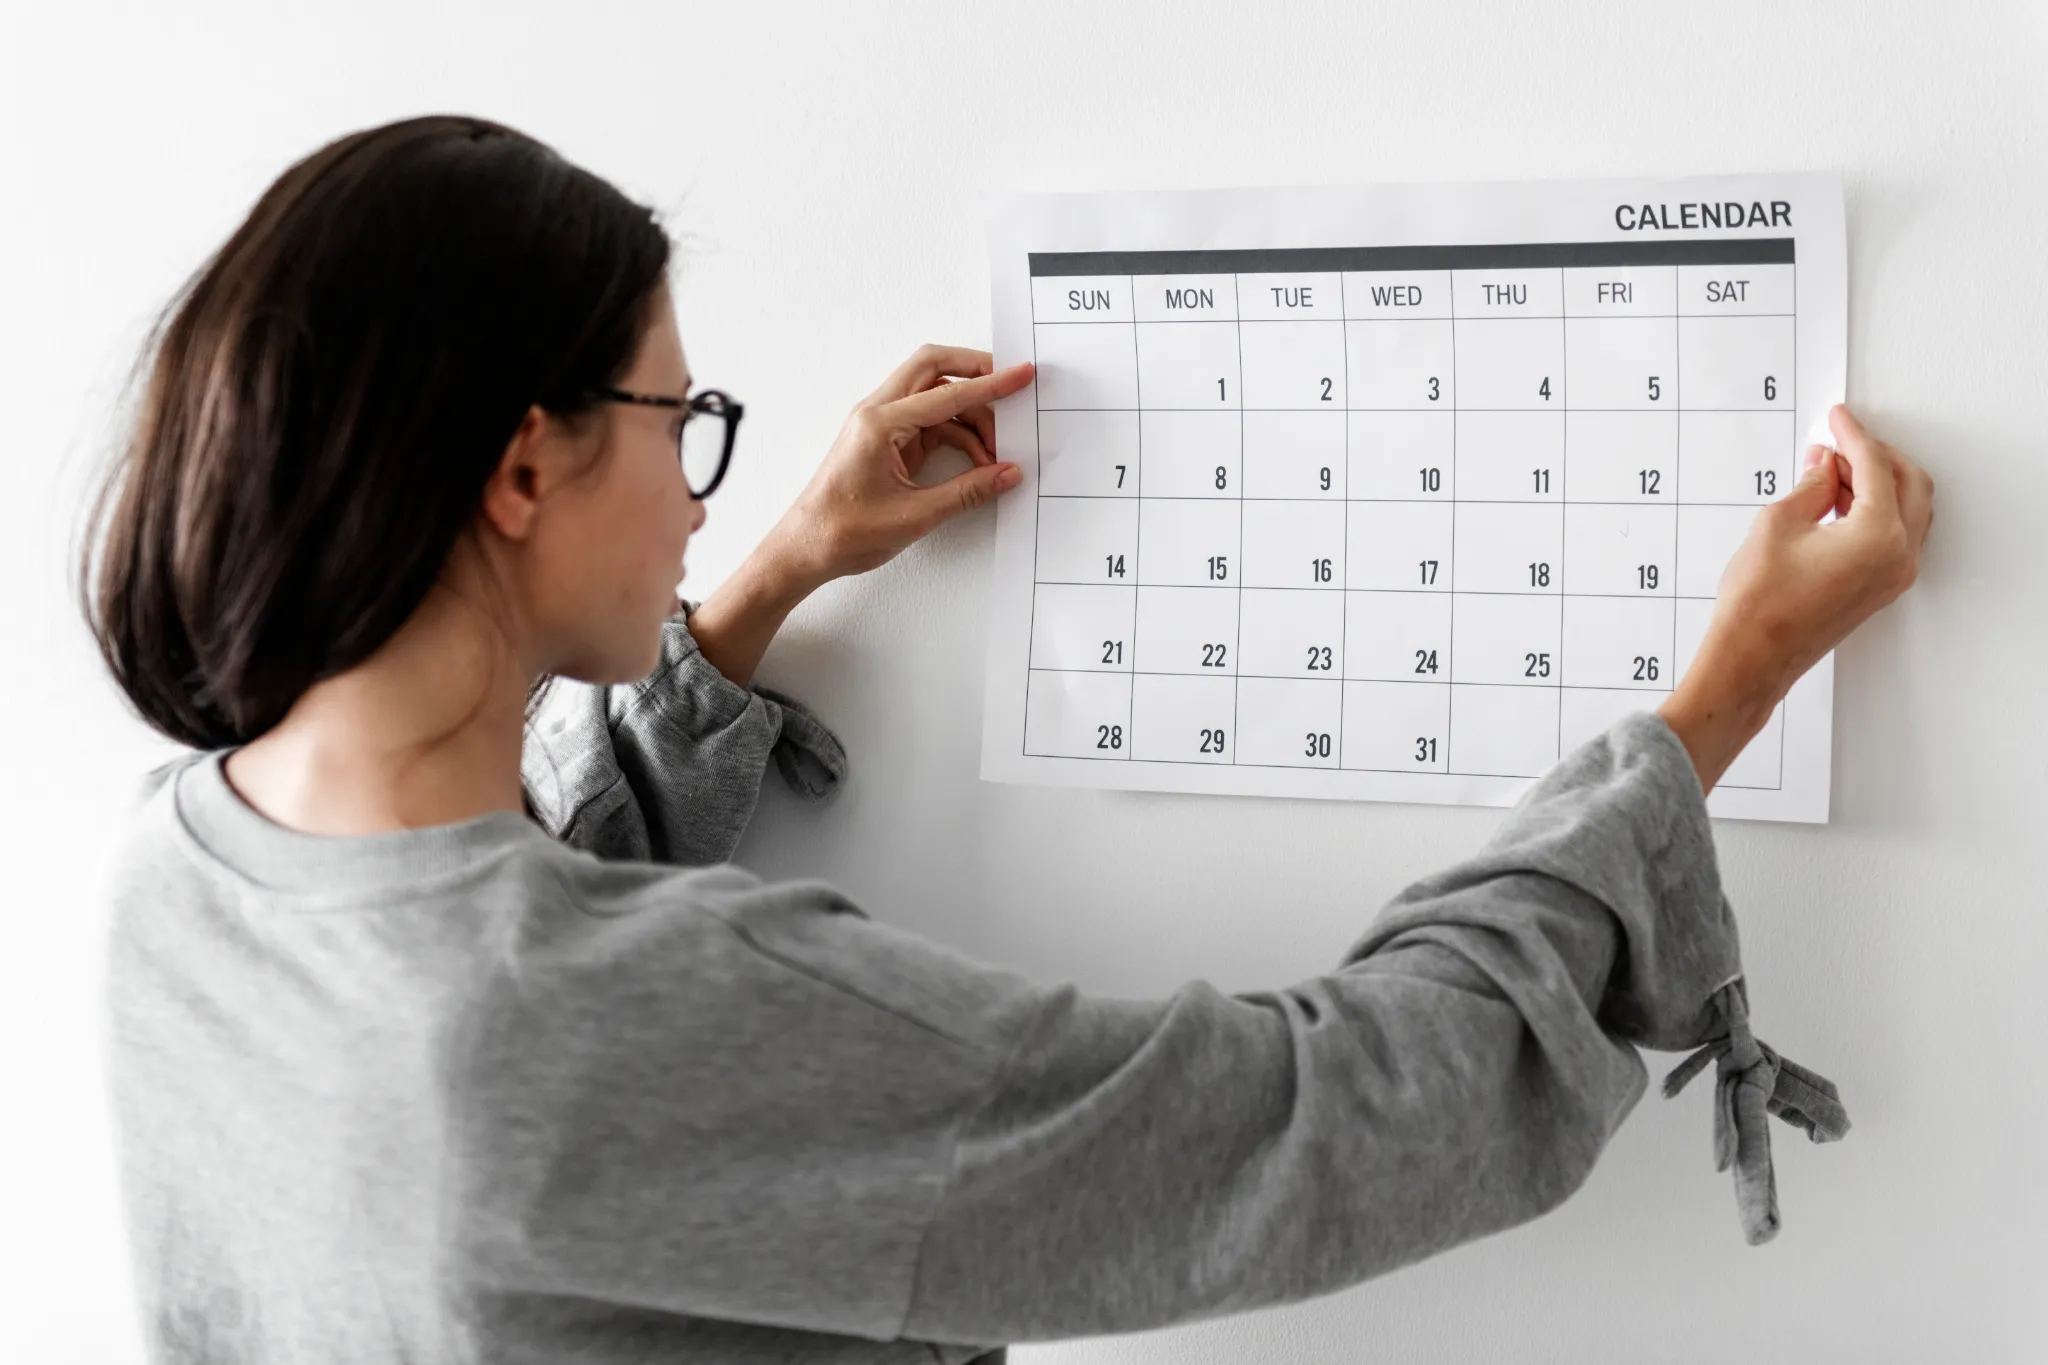 Пятнадцать рабочих дней. Календарь. Человек с календарем. Календарь в руках. Календарь картинка.